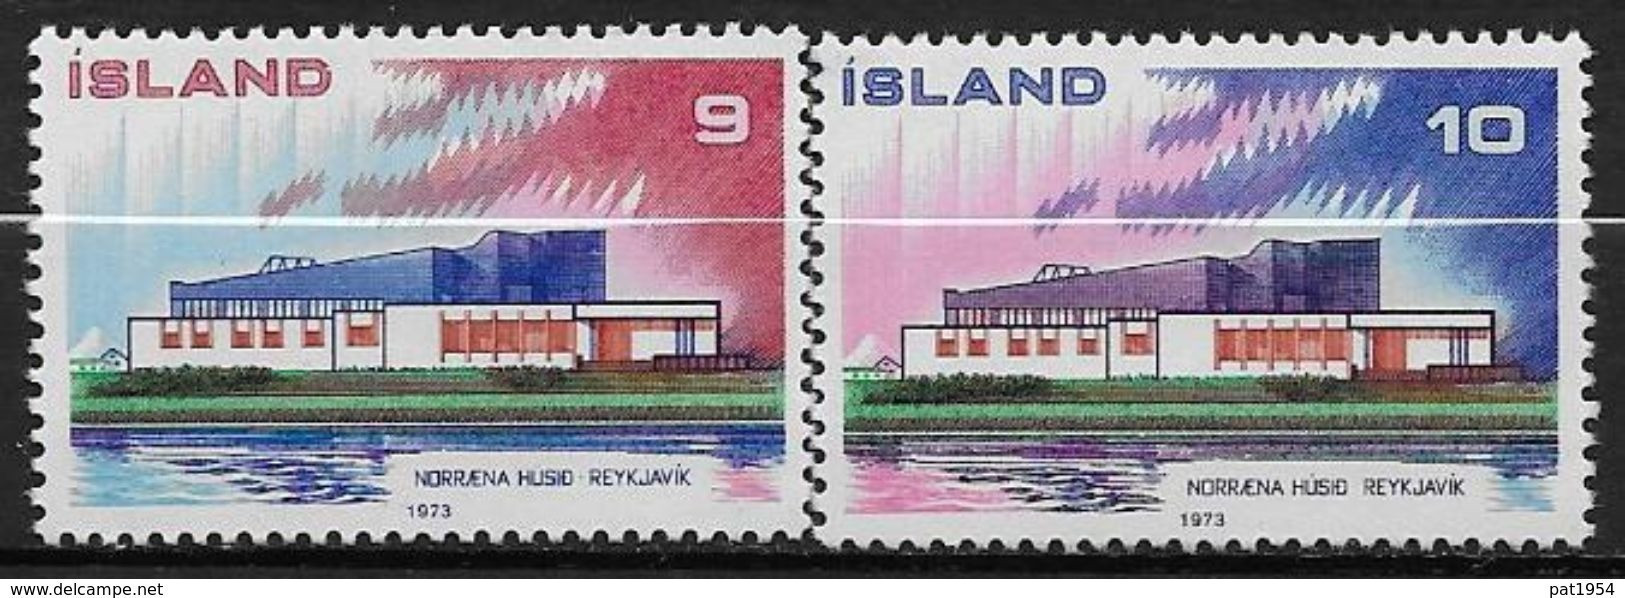 Islande 1973 N° 431/432  Neufs ** MNH émission Pays Nordiques, Norden - Nuevos